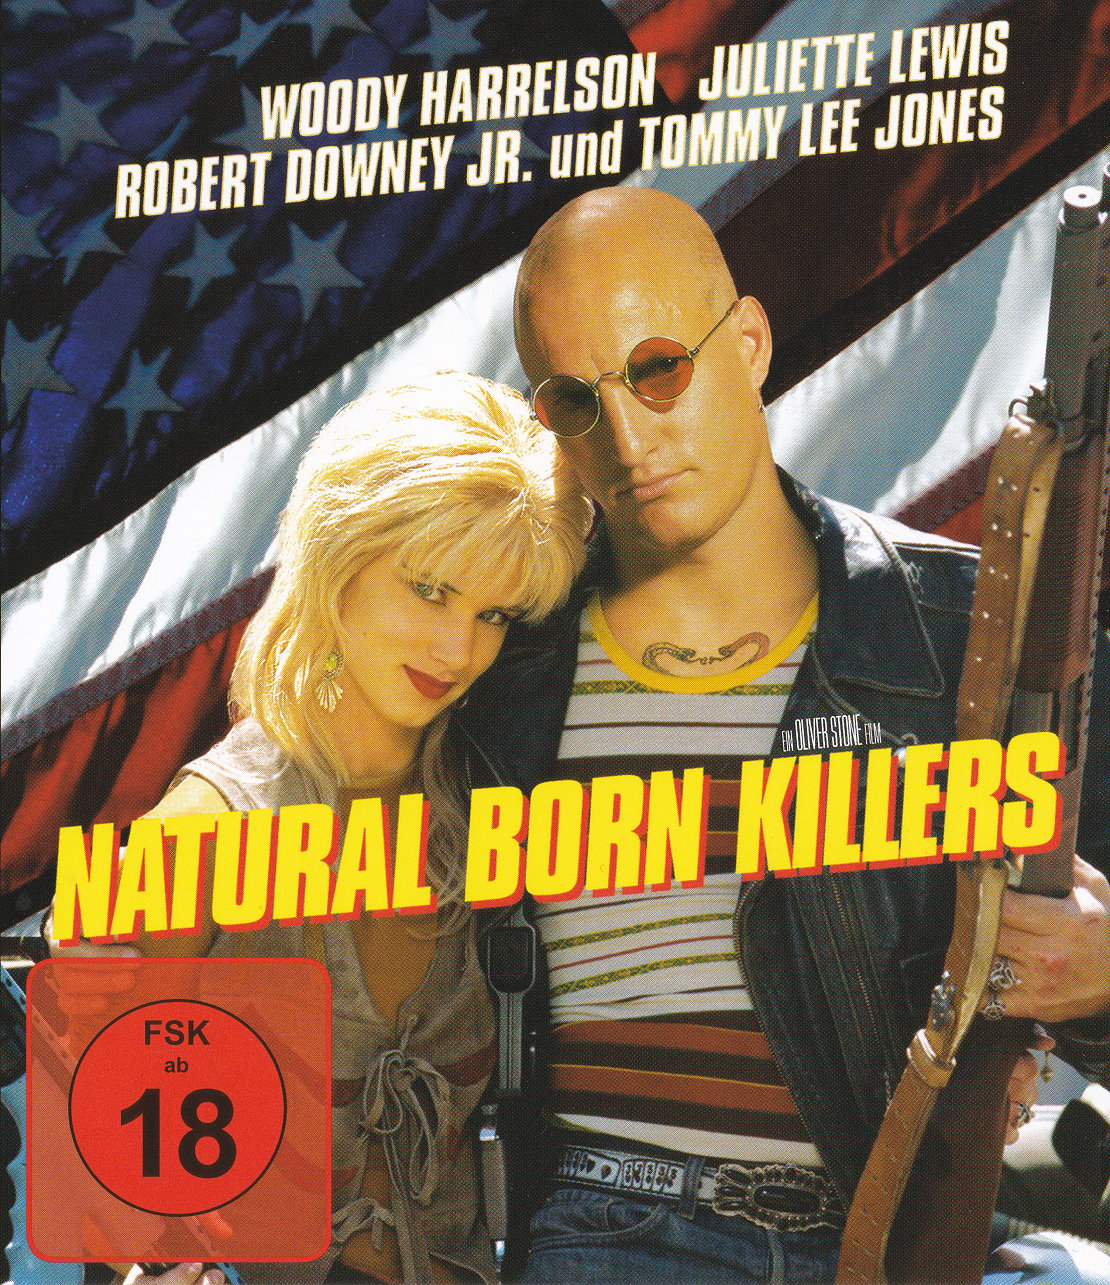 Cover - Natural Born Killers.jpg